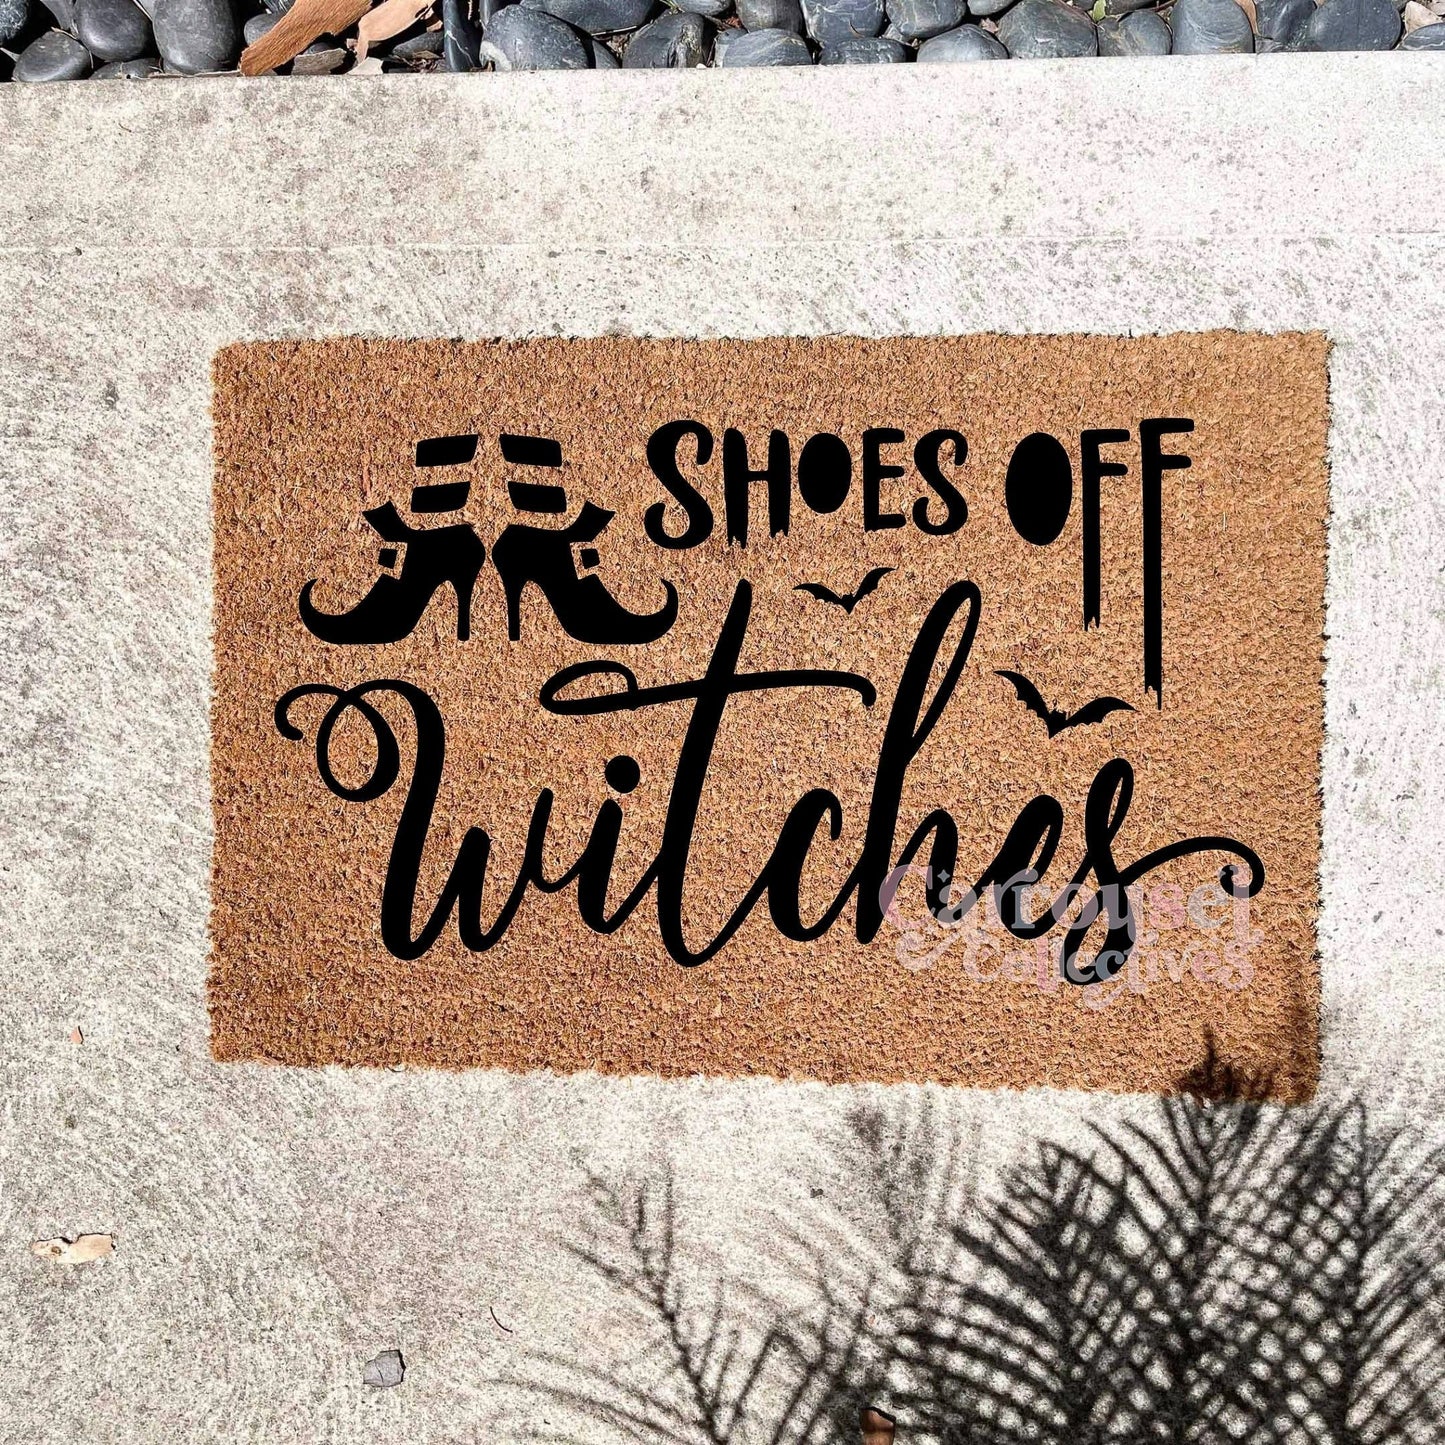 Shoes off Witches doormat, Halloween Doormat, Spooky Doormat, Creepy Doormat